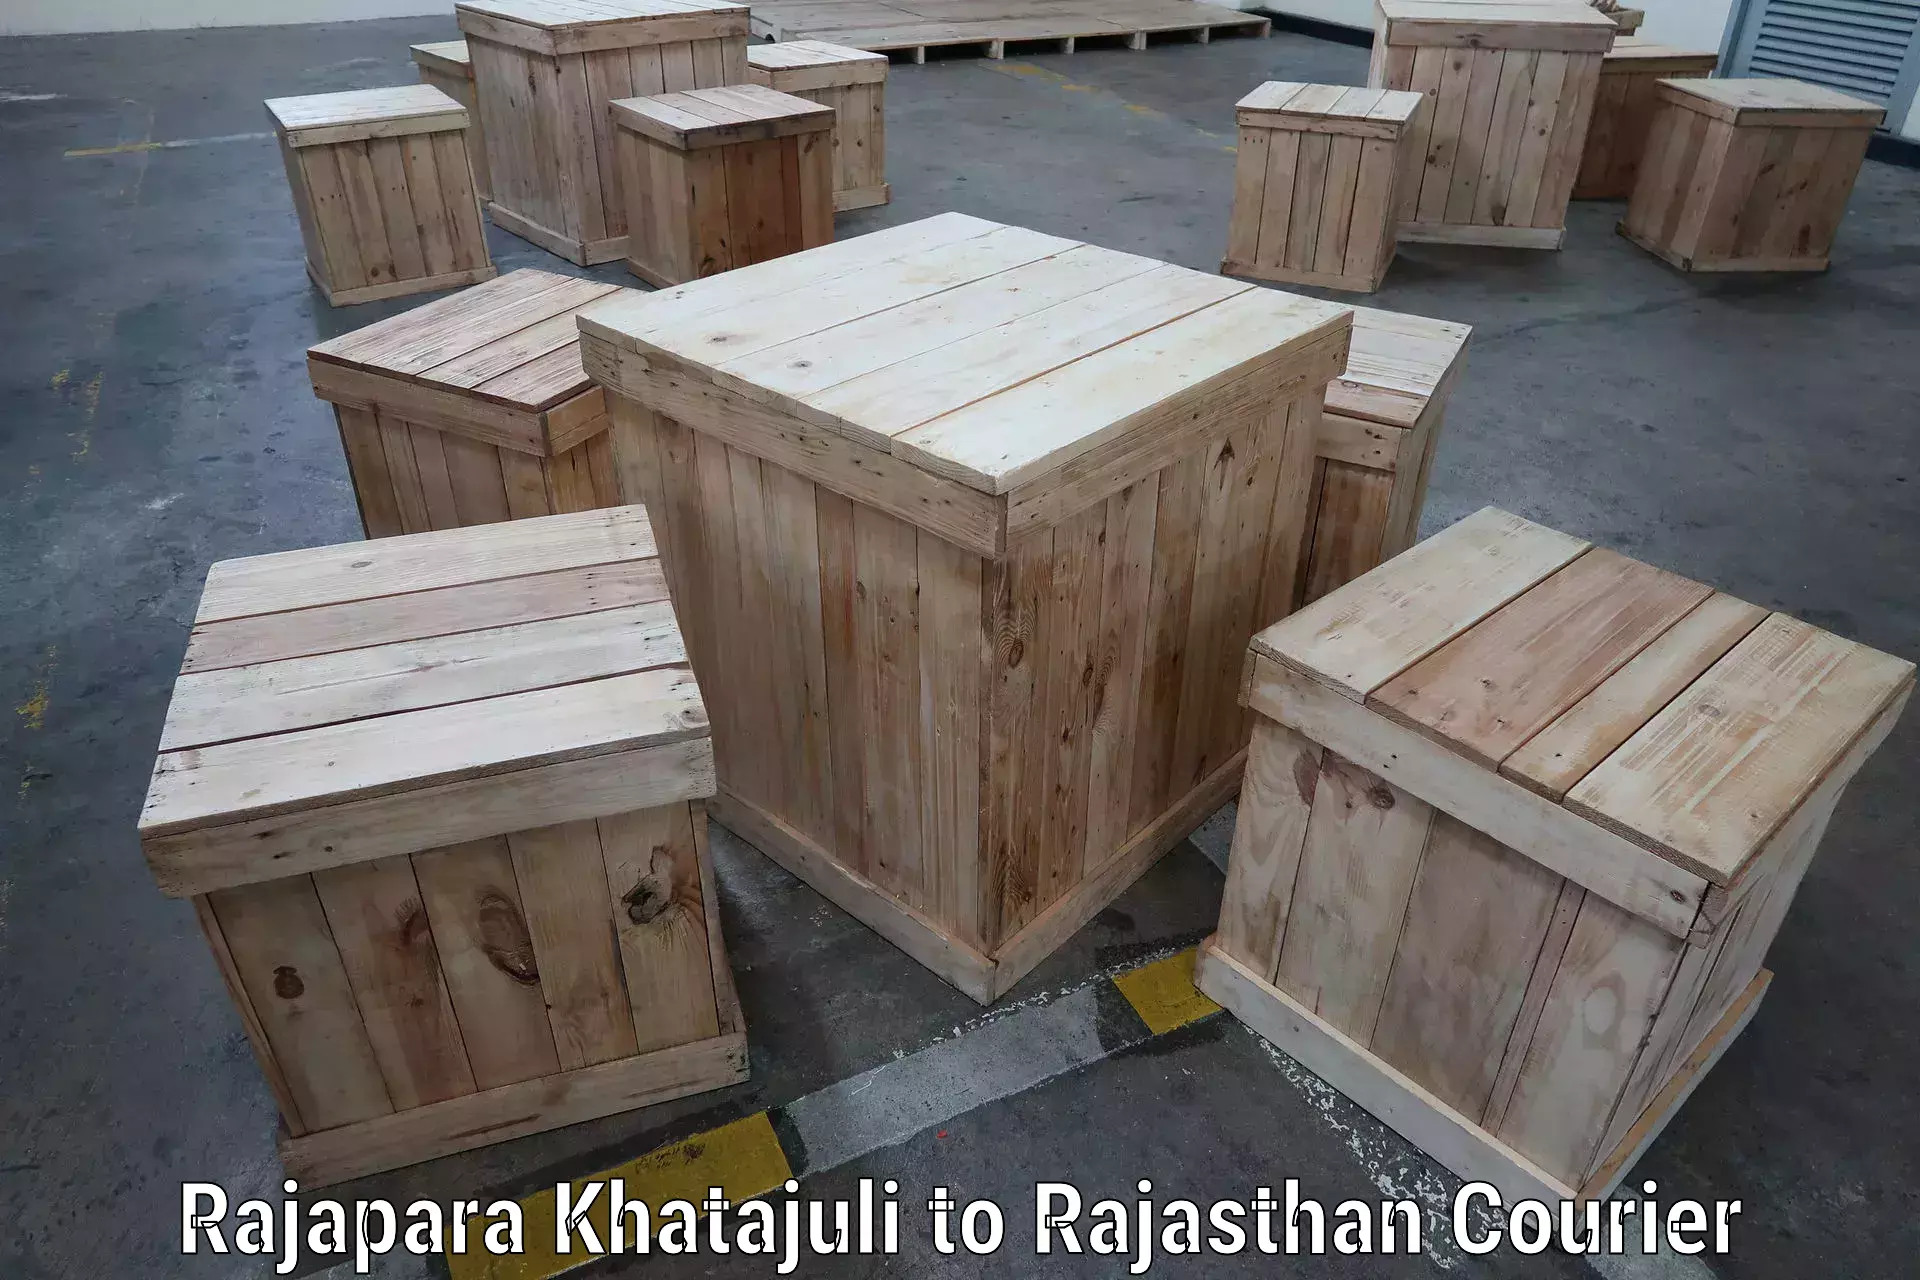 Package tracking in Rajapara Khatajuli to Deoli